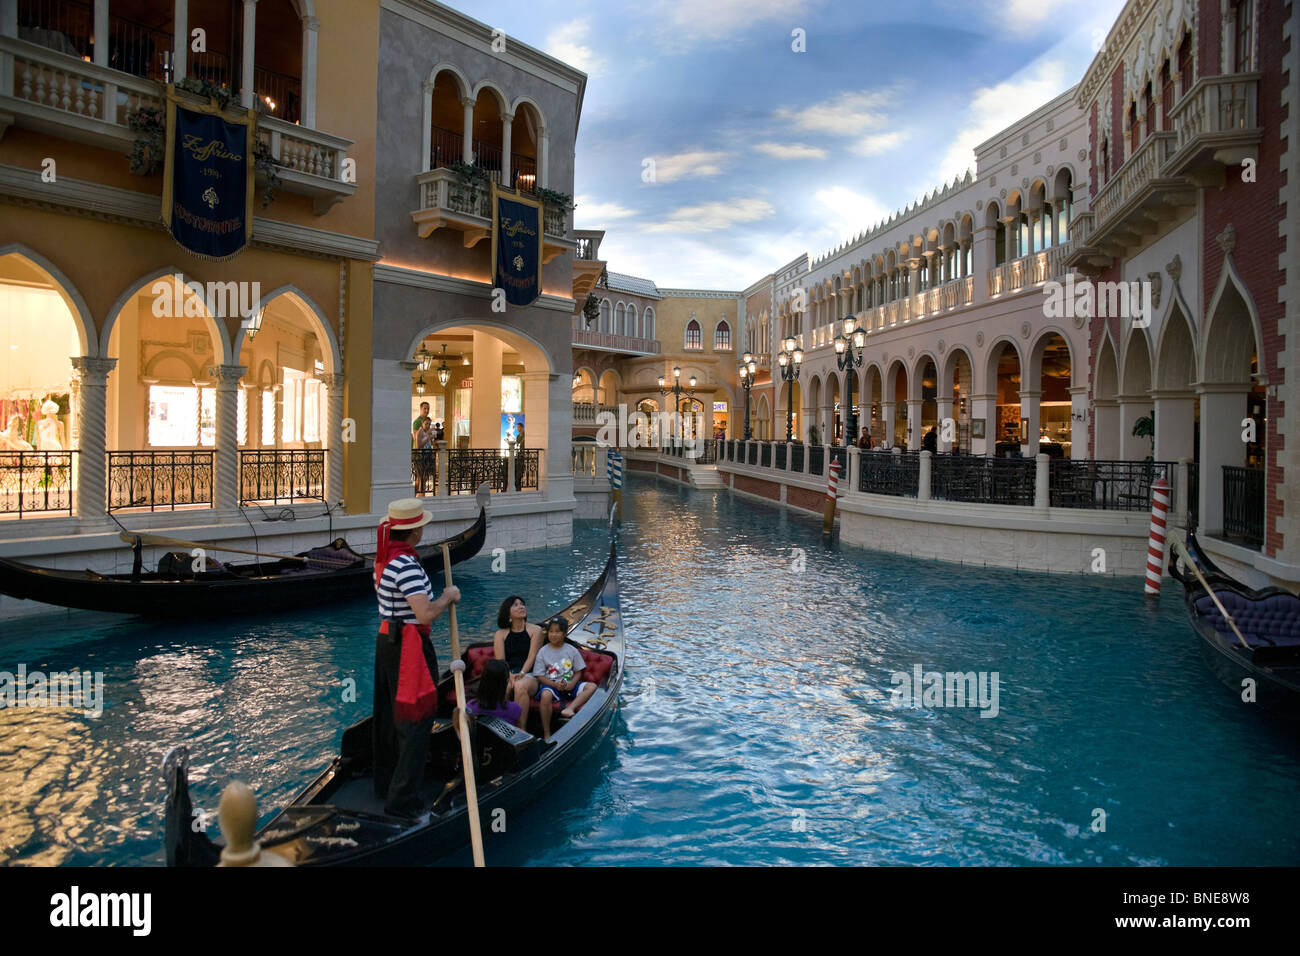 Le Venetian Las Vegas - Venise réplique. Dispositif de l'eau du canal avec gondoles. Banque D'Images